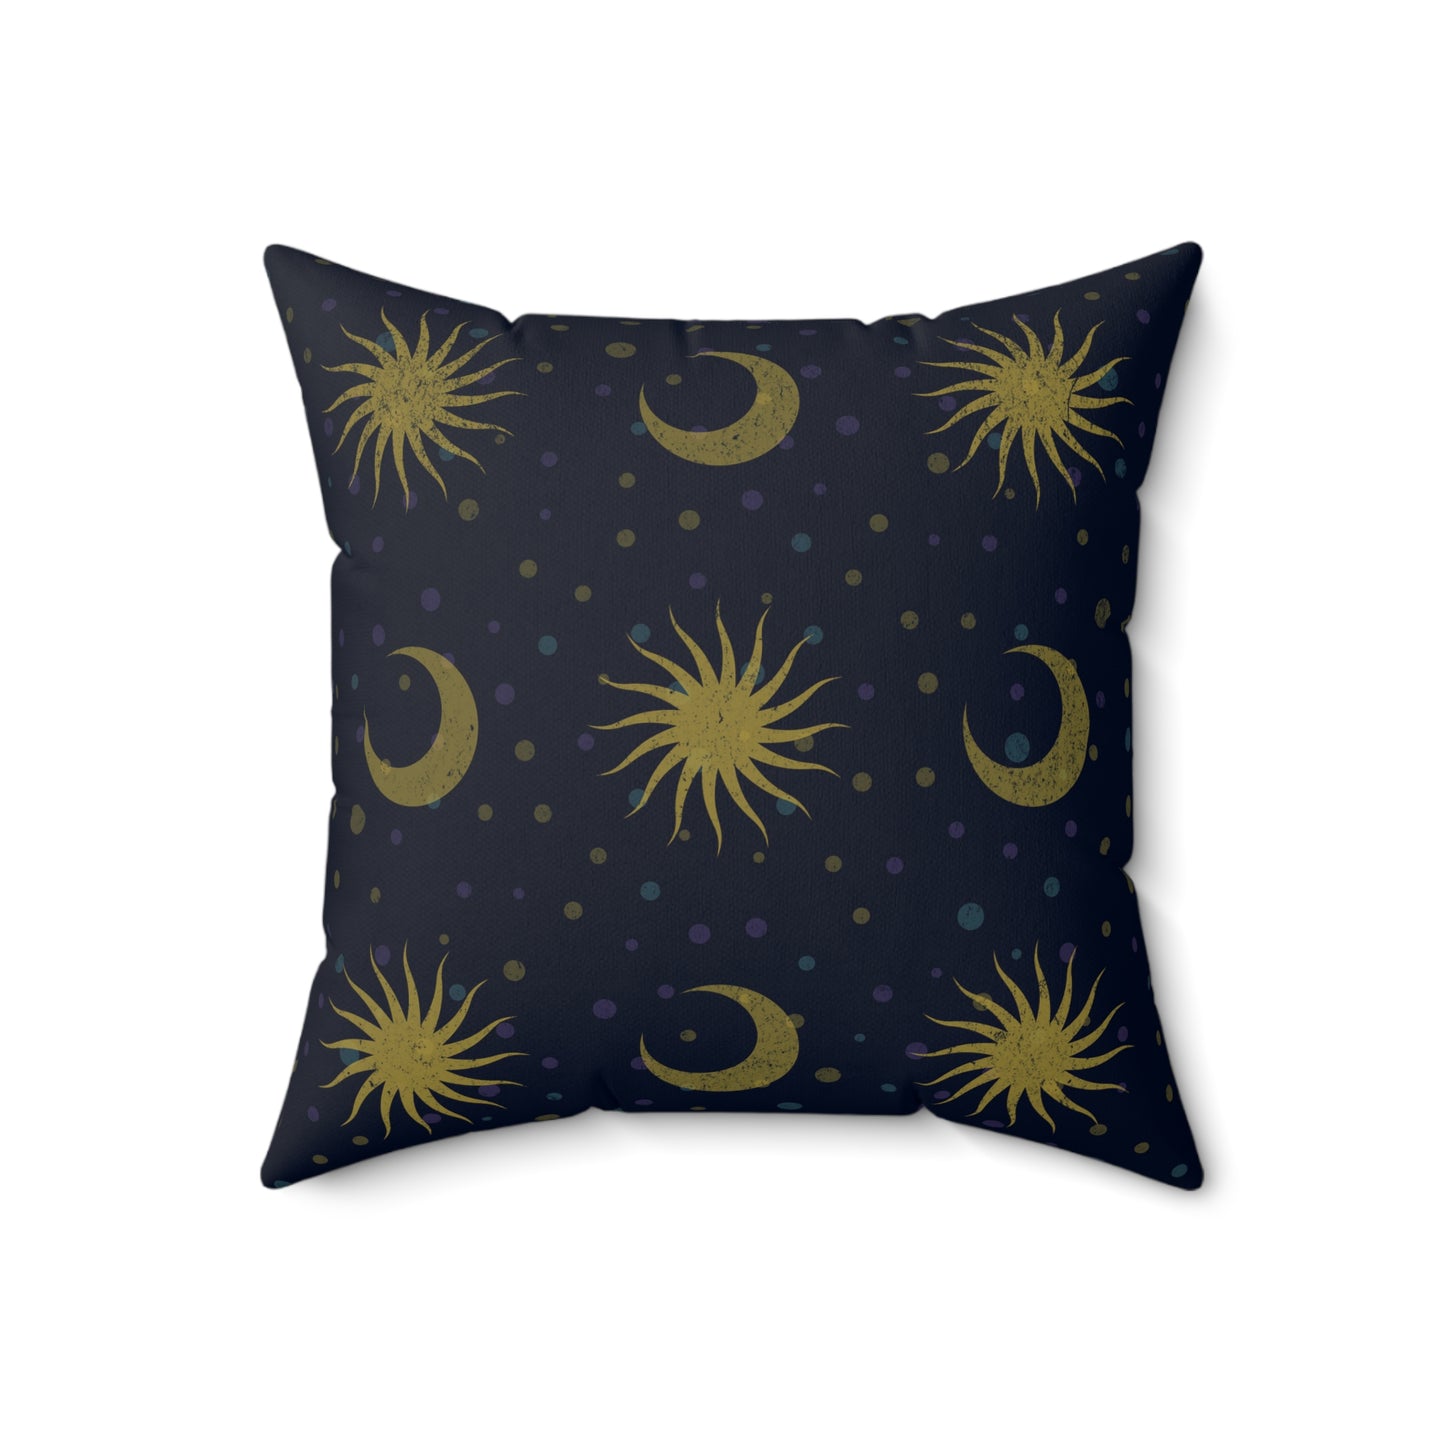 Black Cat Celestial Travel Co. 18" Pillow